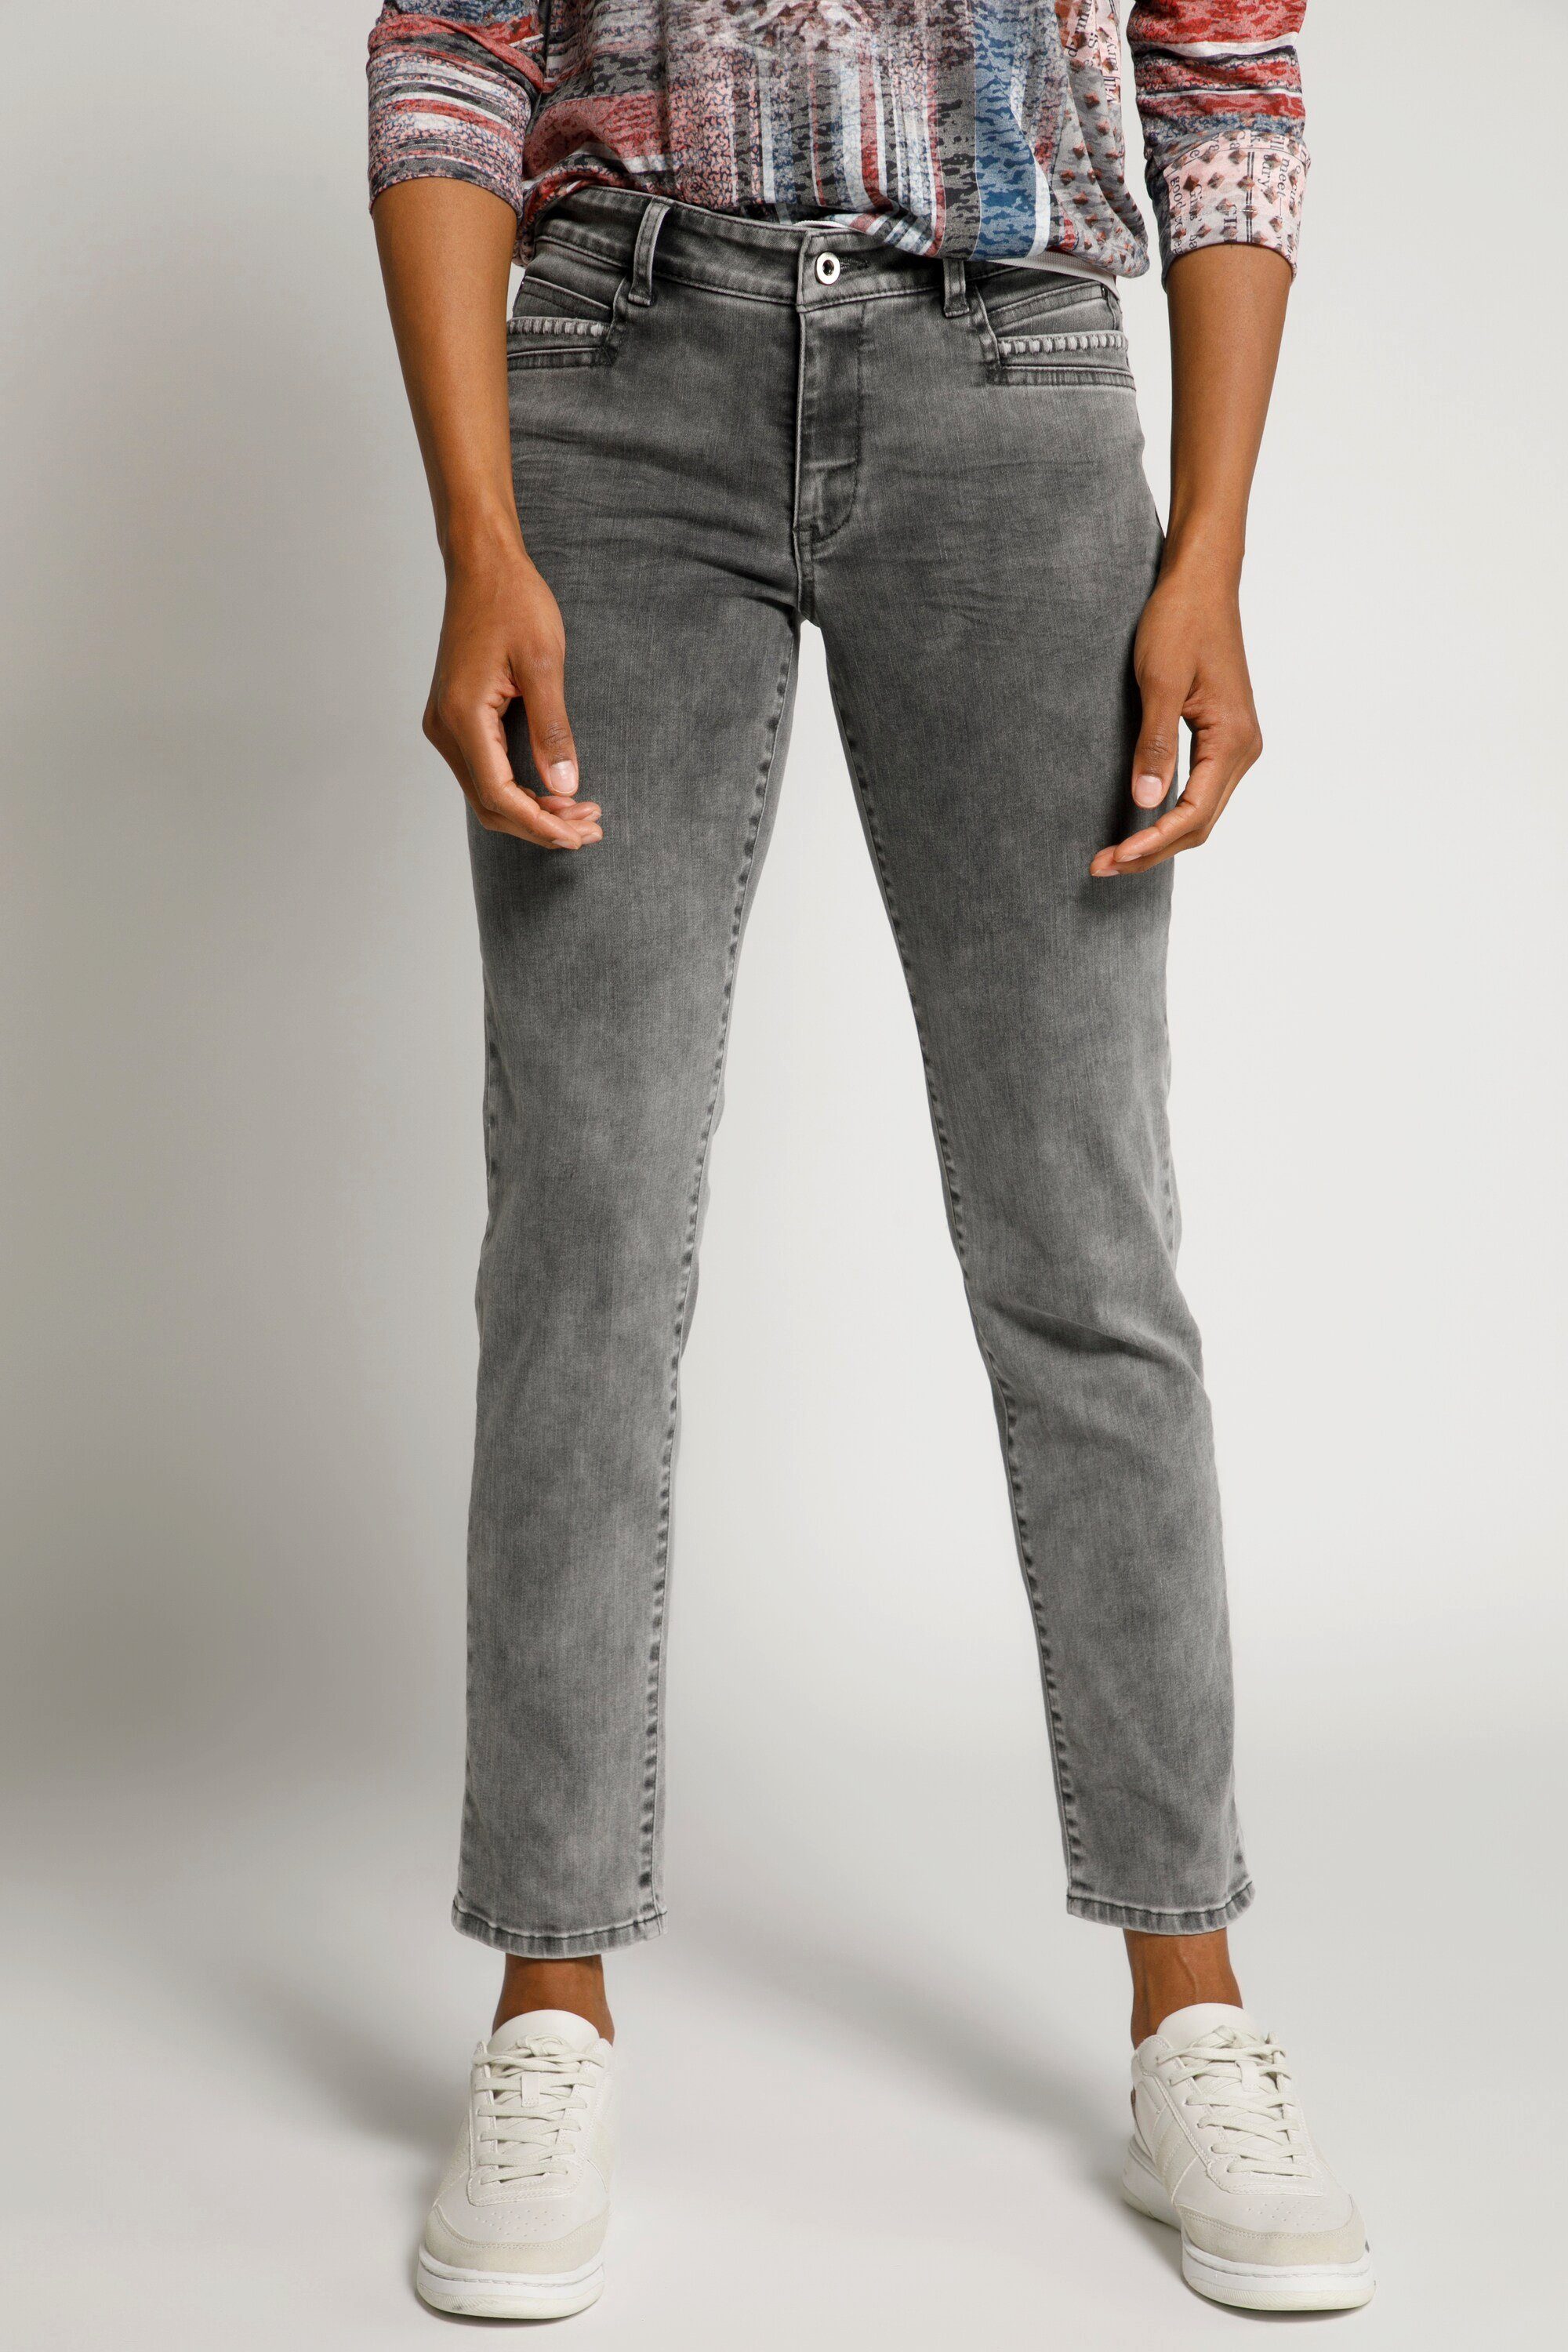 Gina Laura Damen Jeans online kaufen | OTTO